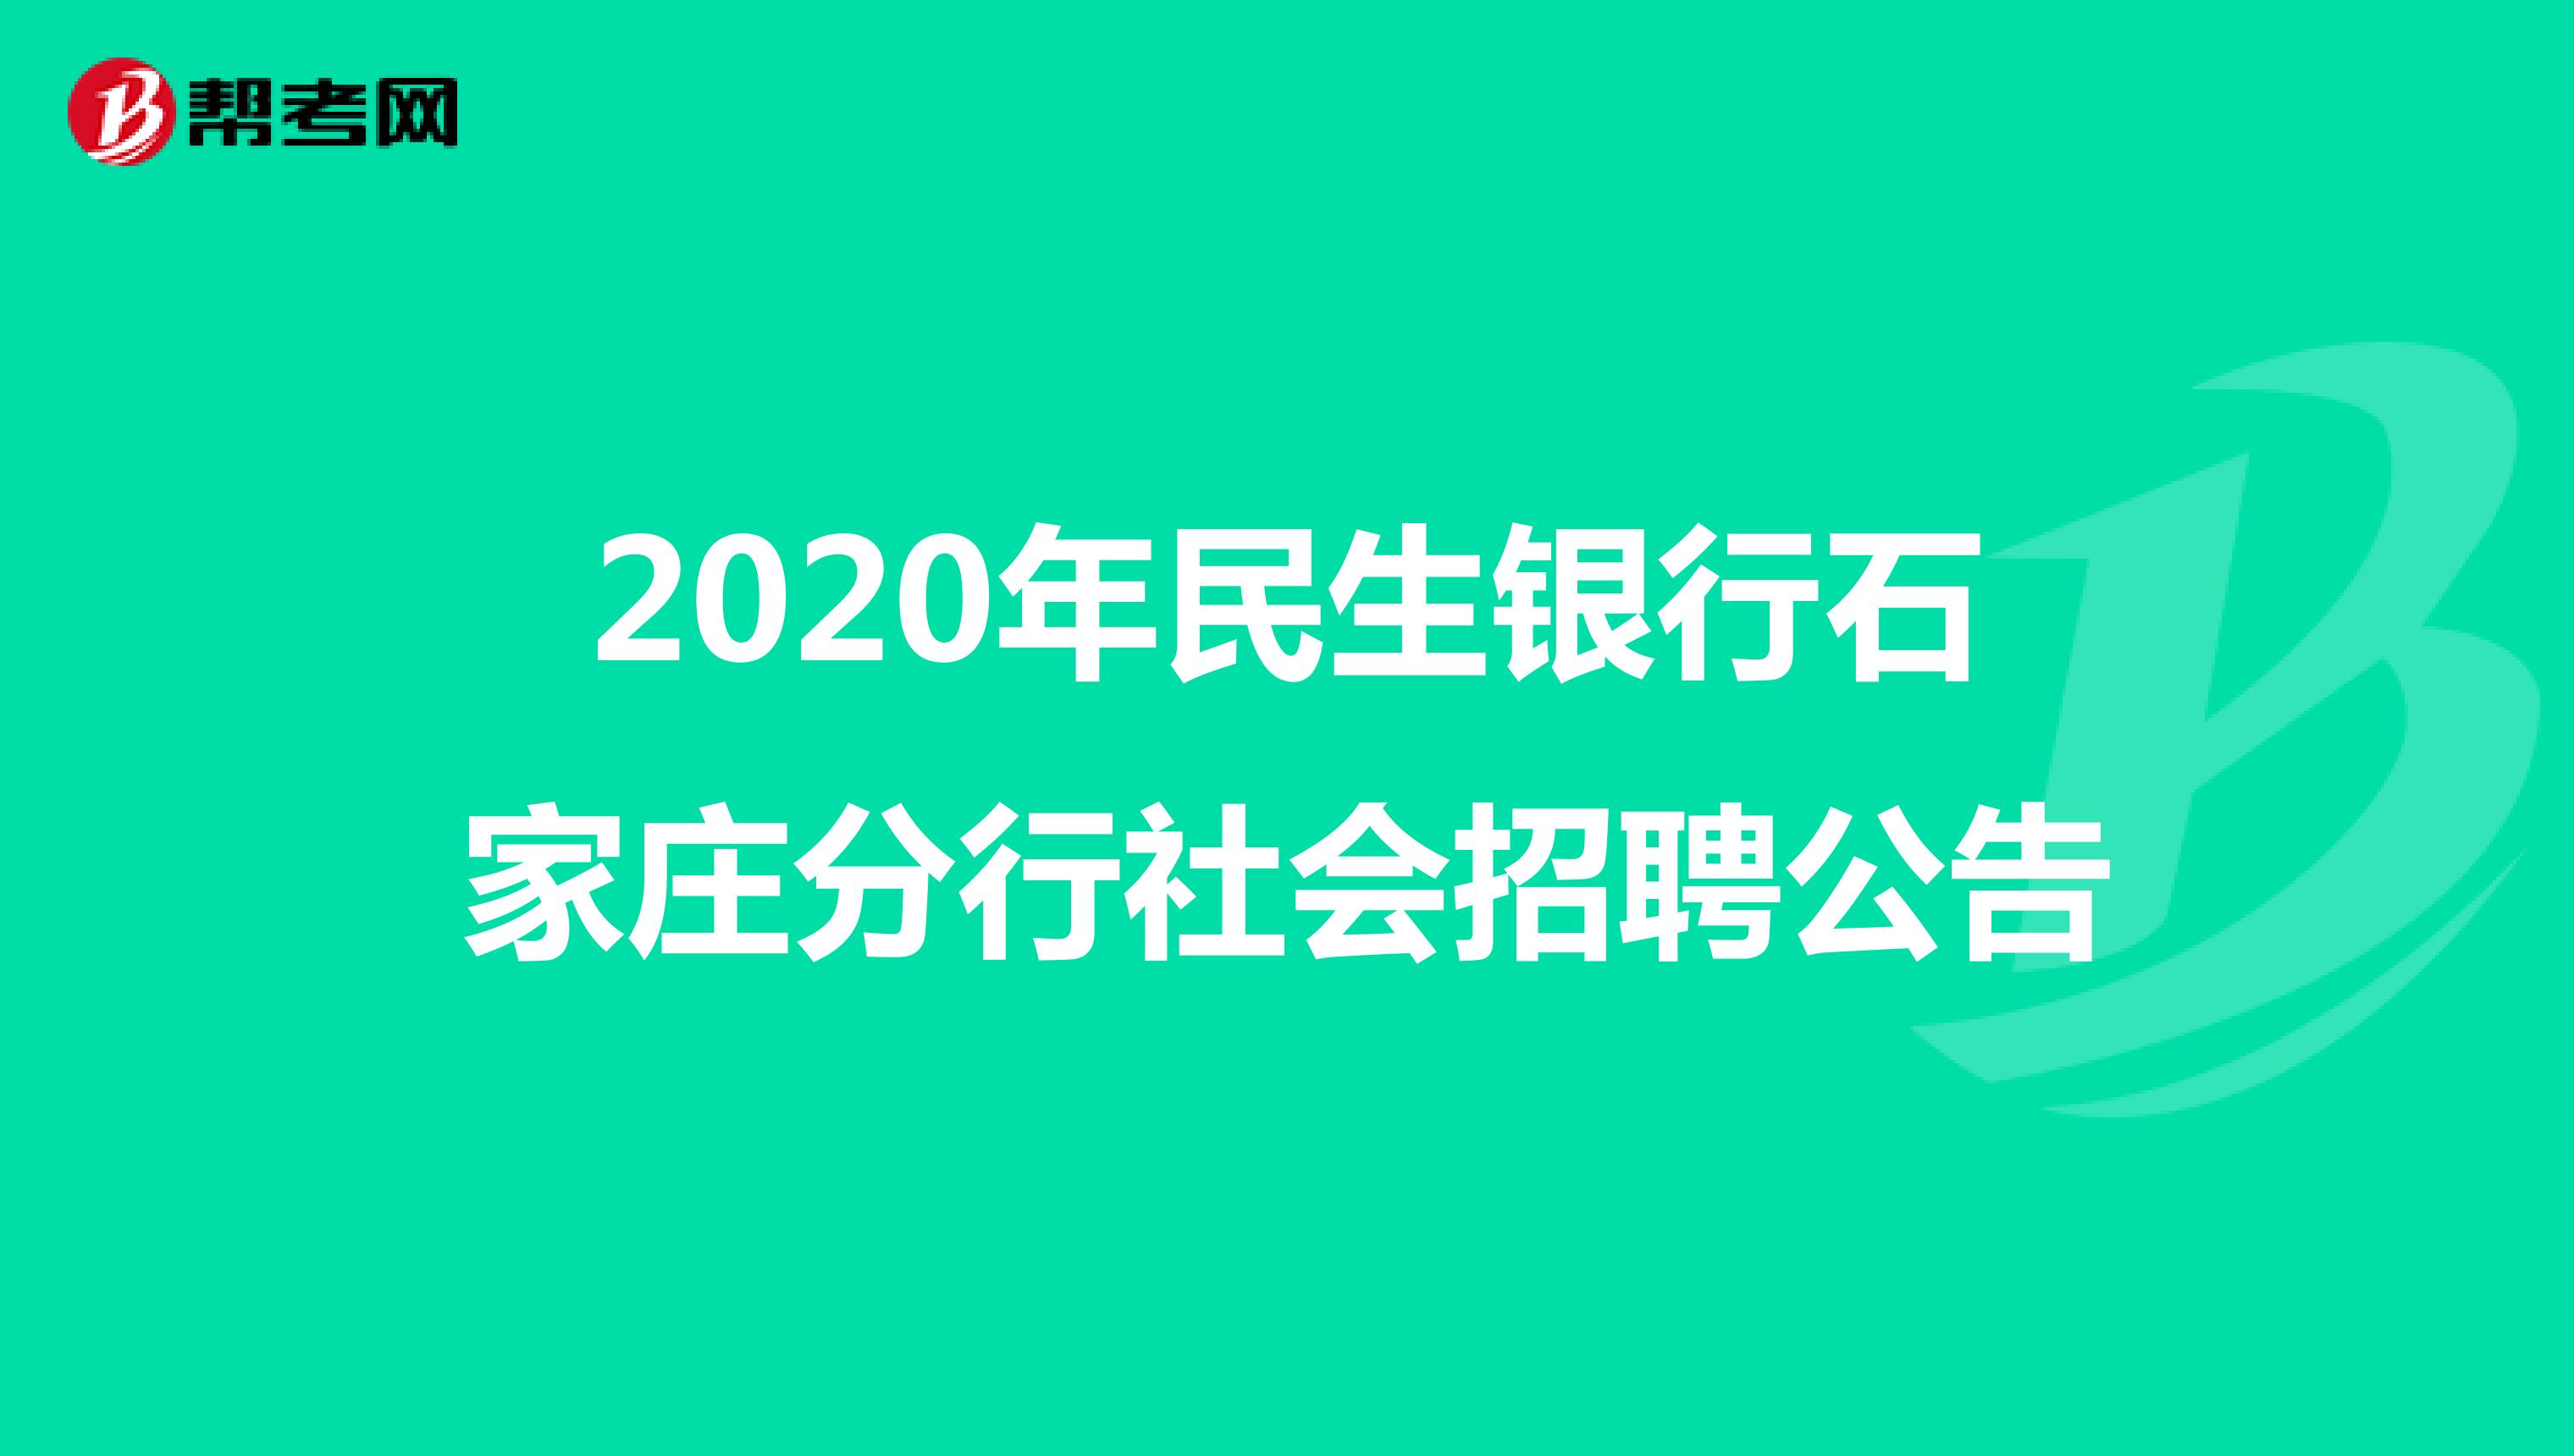 2020年民生银行石家庄分行社会招聘公告 